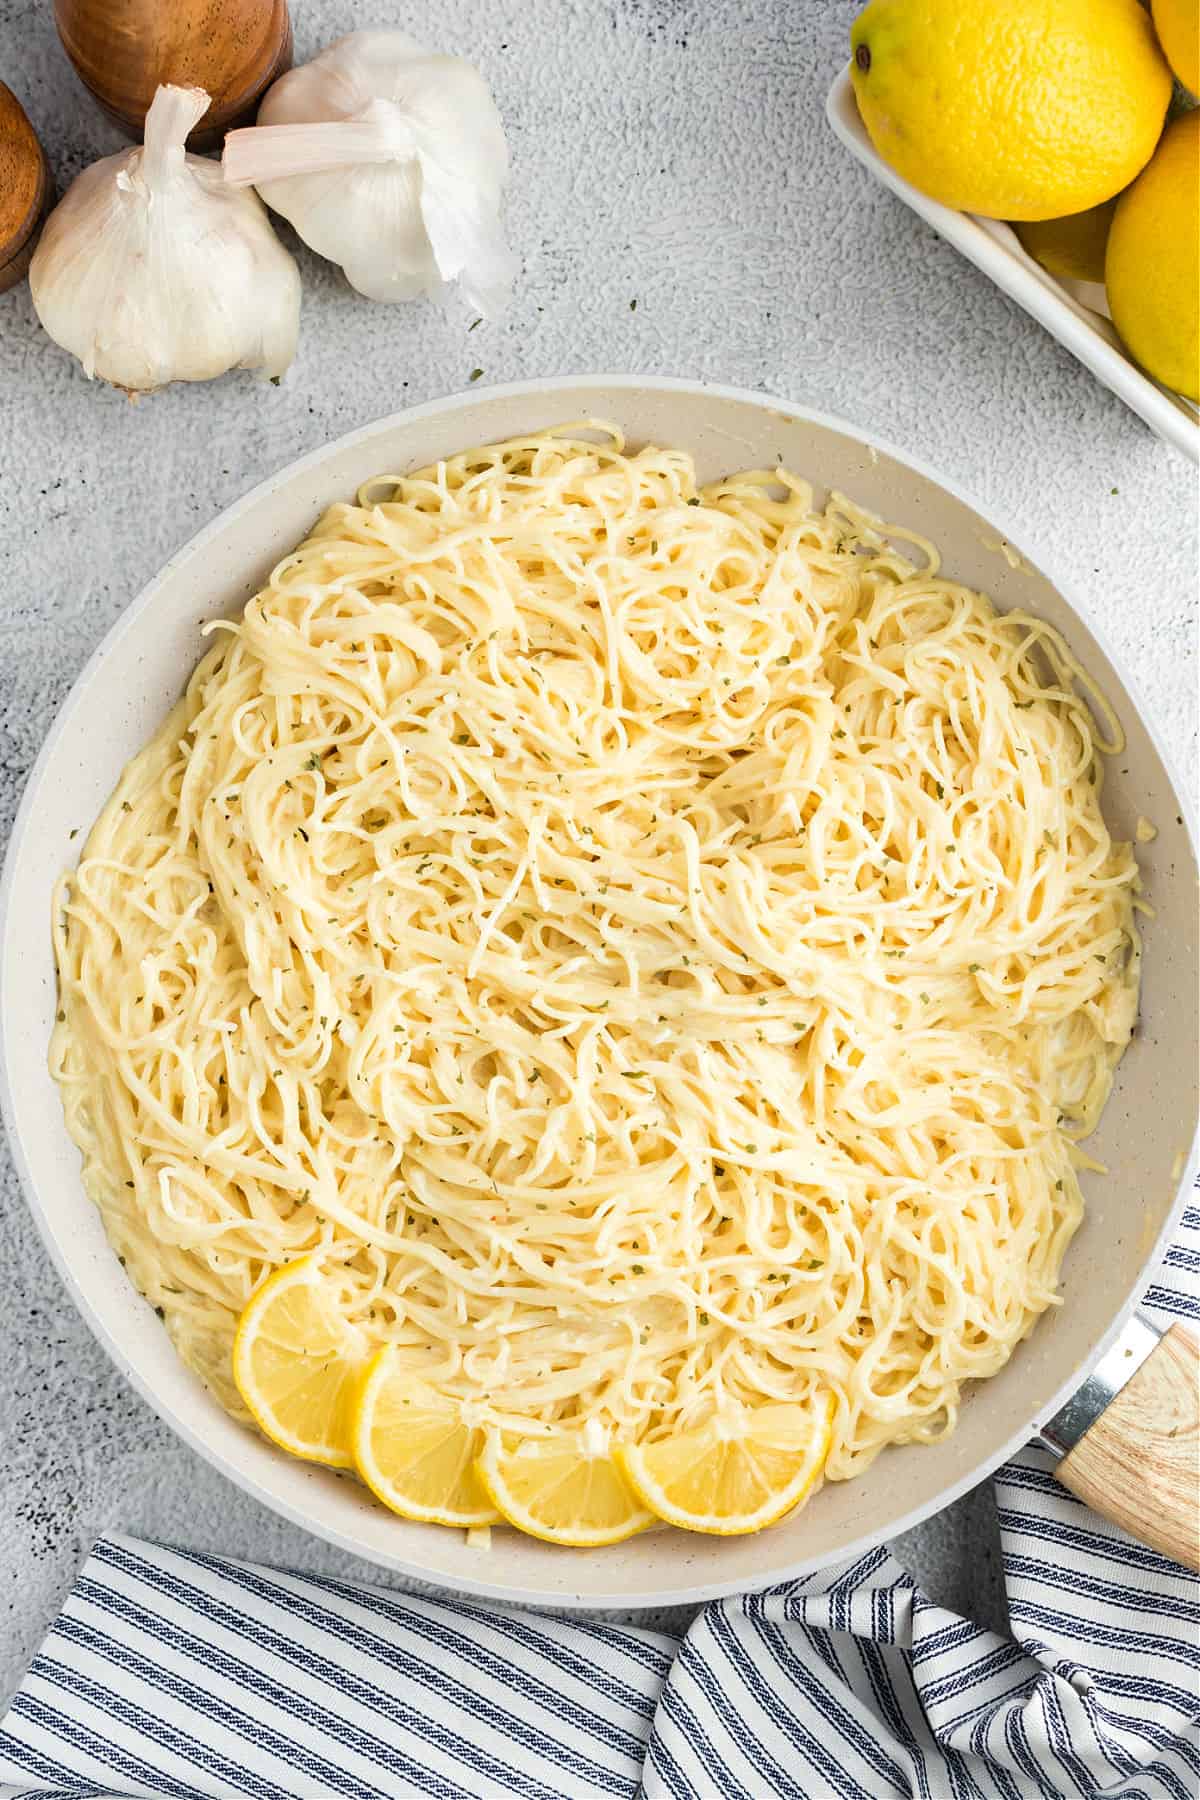 Lemon garlic pasta in a big white serving bowl.